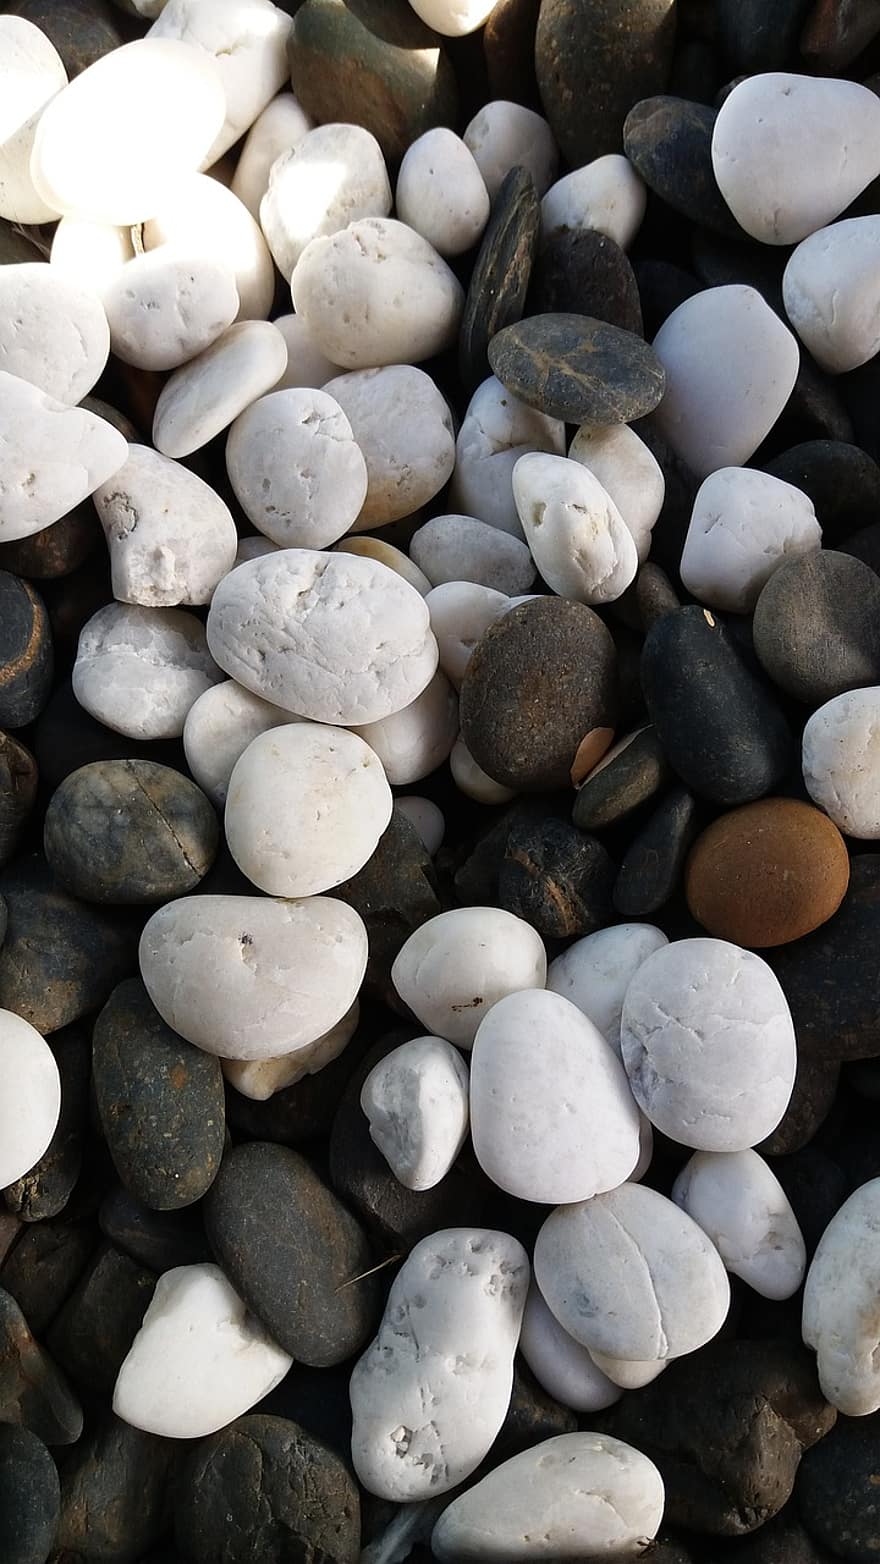 kamyki, skała, żwir, tekstura, kamień, kamyk, tła, zbliżenie, sterta, materiał kamienny, wzór